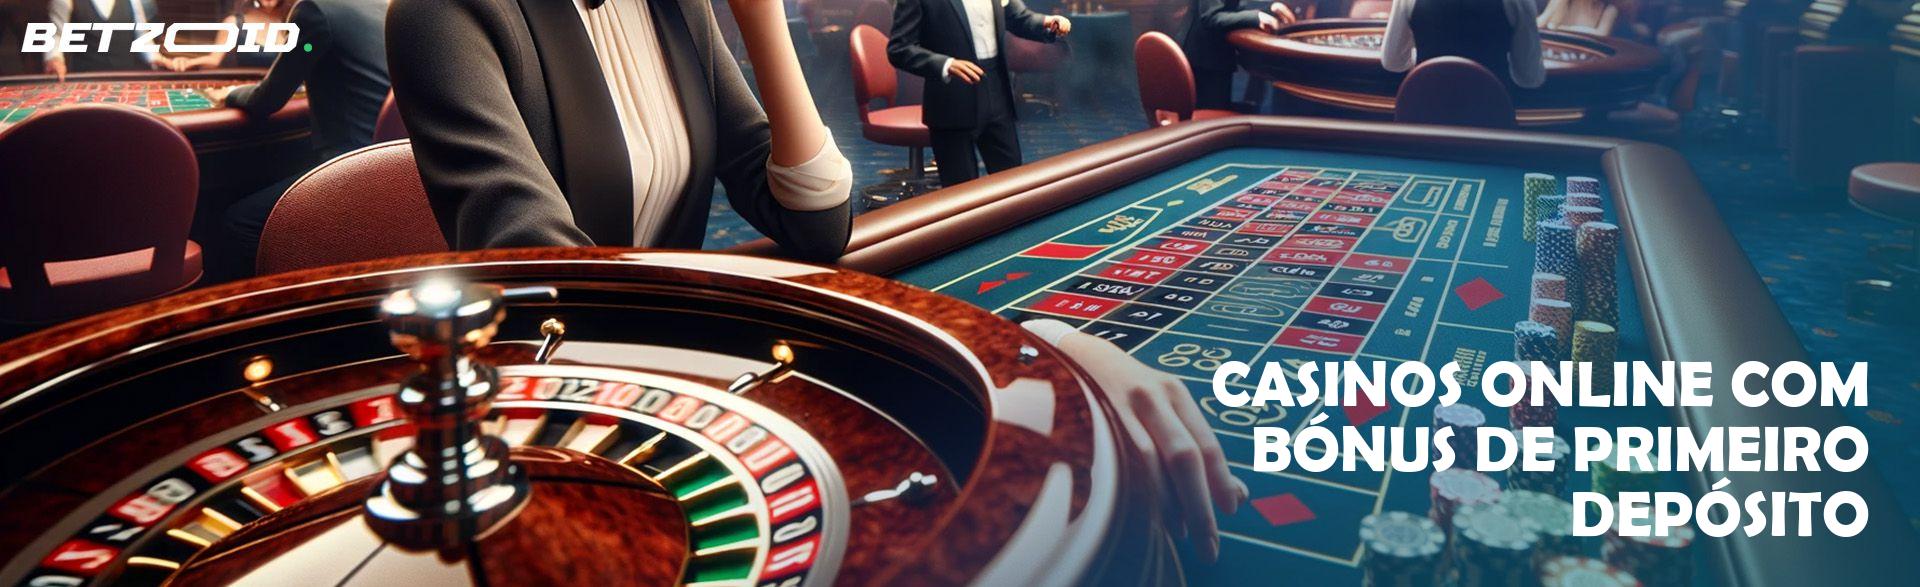 Casinos Online com Bónus de Primeiro Depósito.